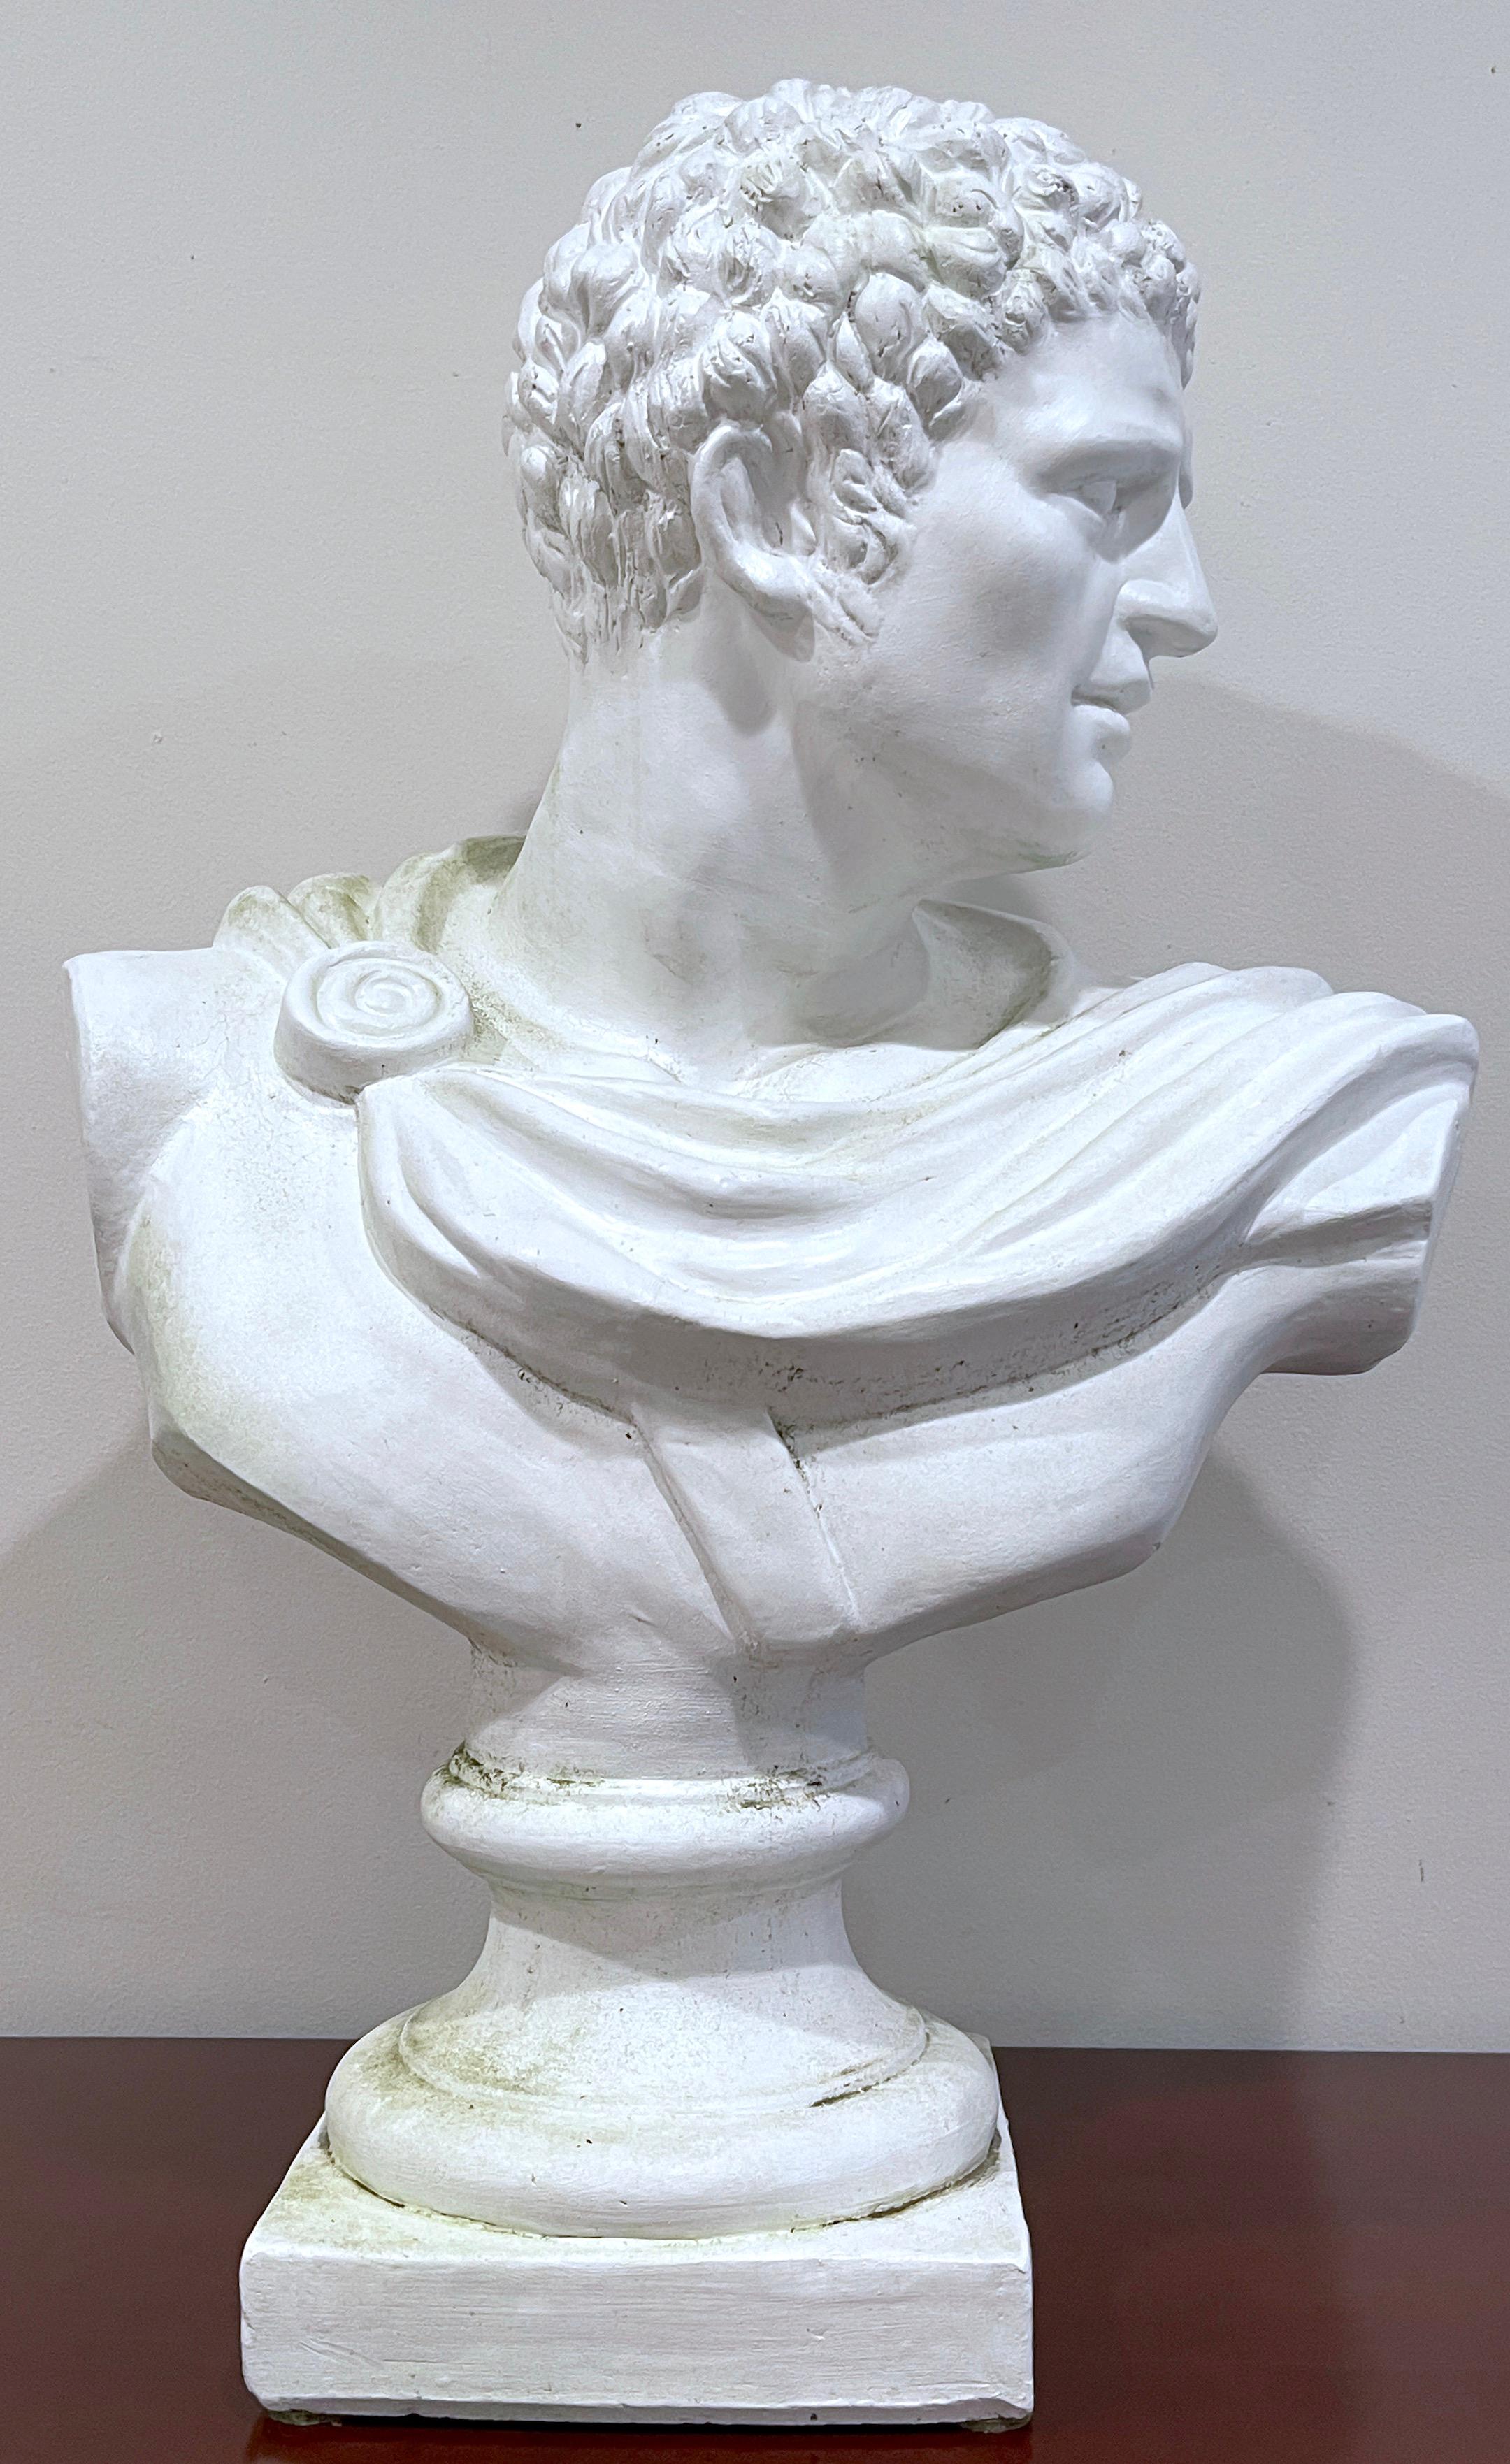 Buste italien en terre cuite blanche représentant l'empereur romain César Auguste, Octave 
Italie, années 1900, Peut être utilisé à l'intérieur ou à l'extérieur.

Un buste de grande taille, bien exécuté, en terre cuite, précédemment